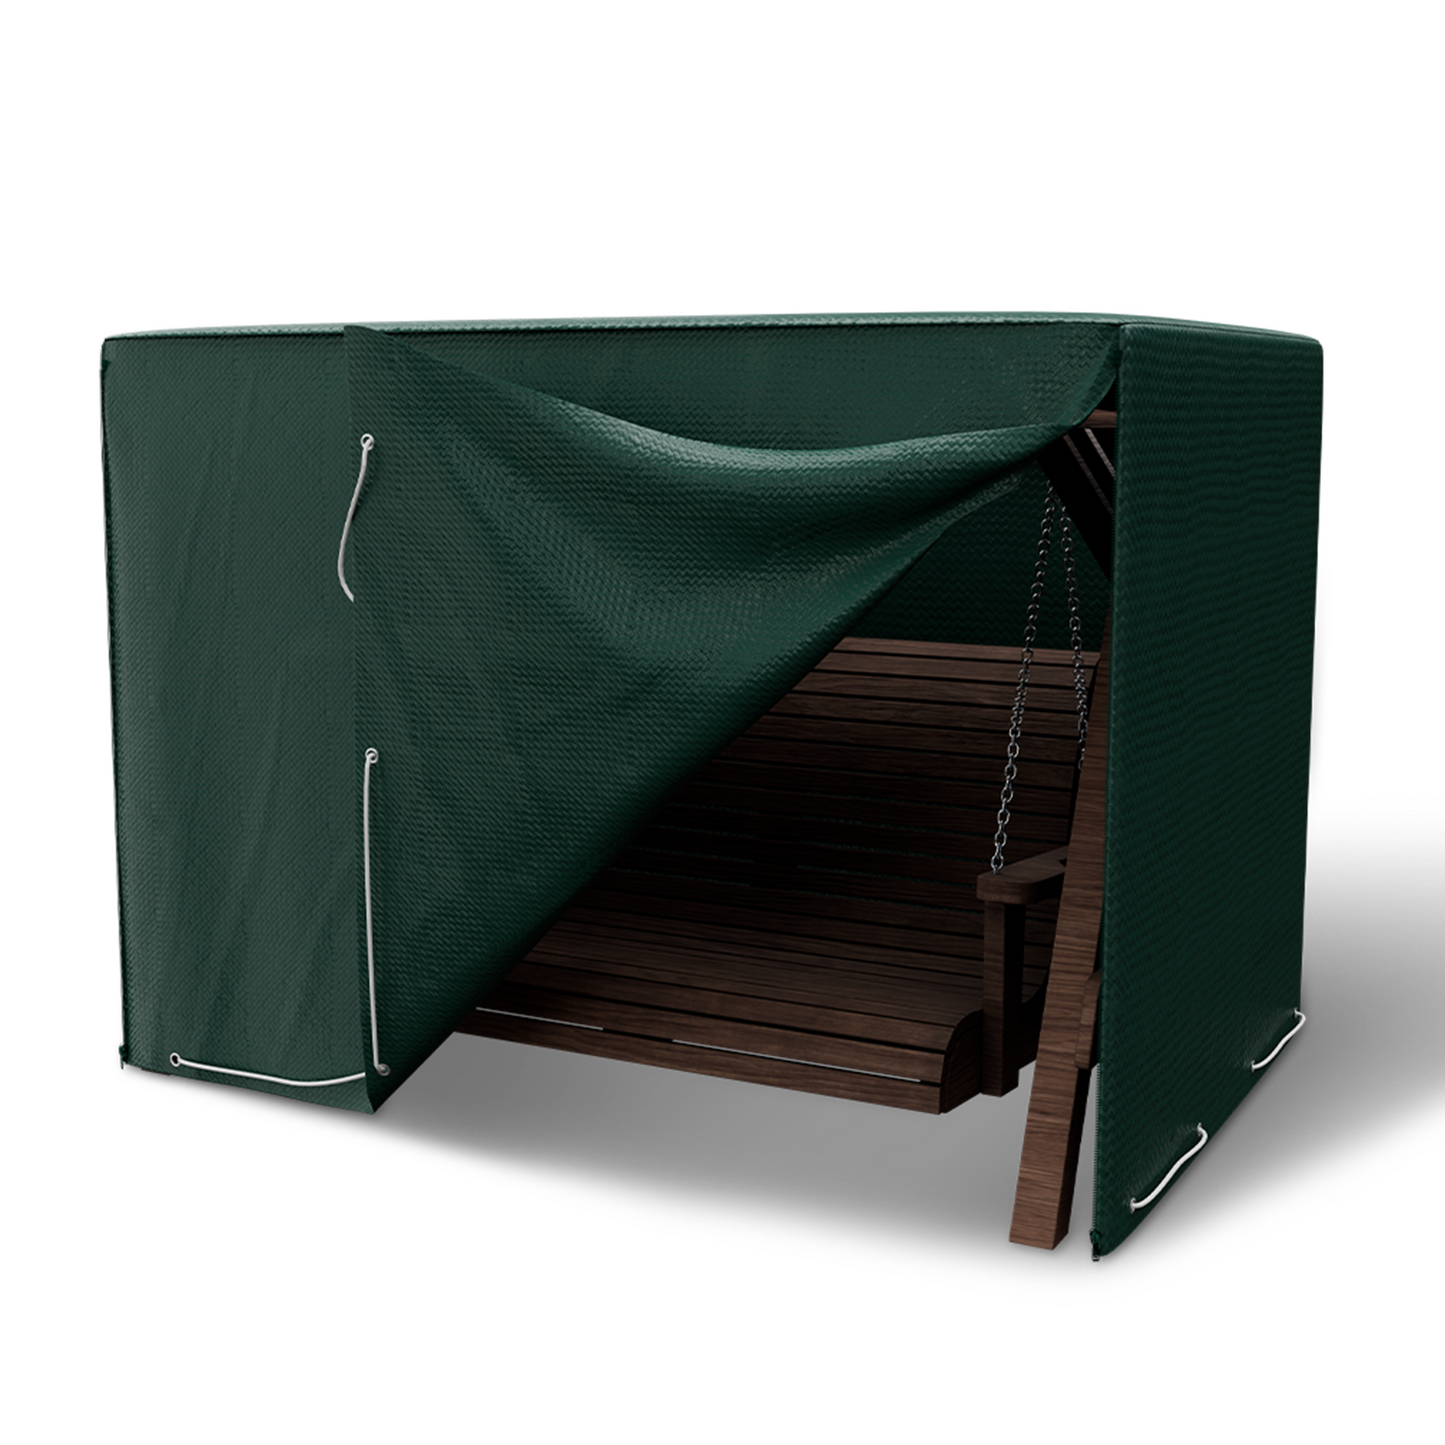 Schutzhülle Hollywoodschaukel - 150 x 210 x 150 cm - Abdeckung für 3-4 Sitzer - wasserdicht - grün